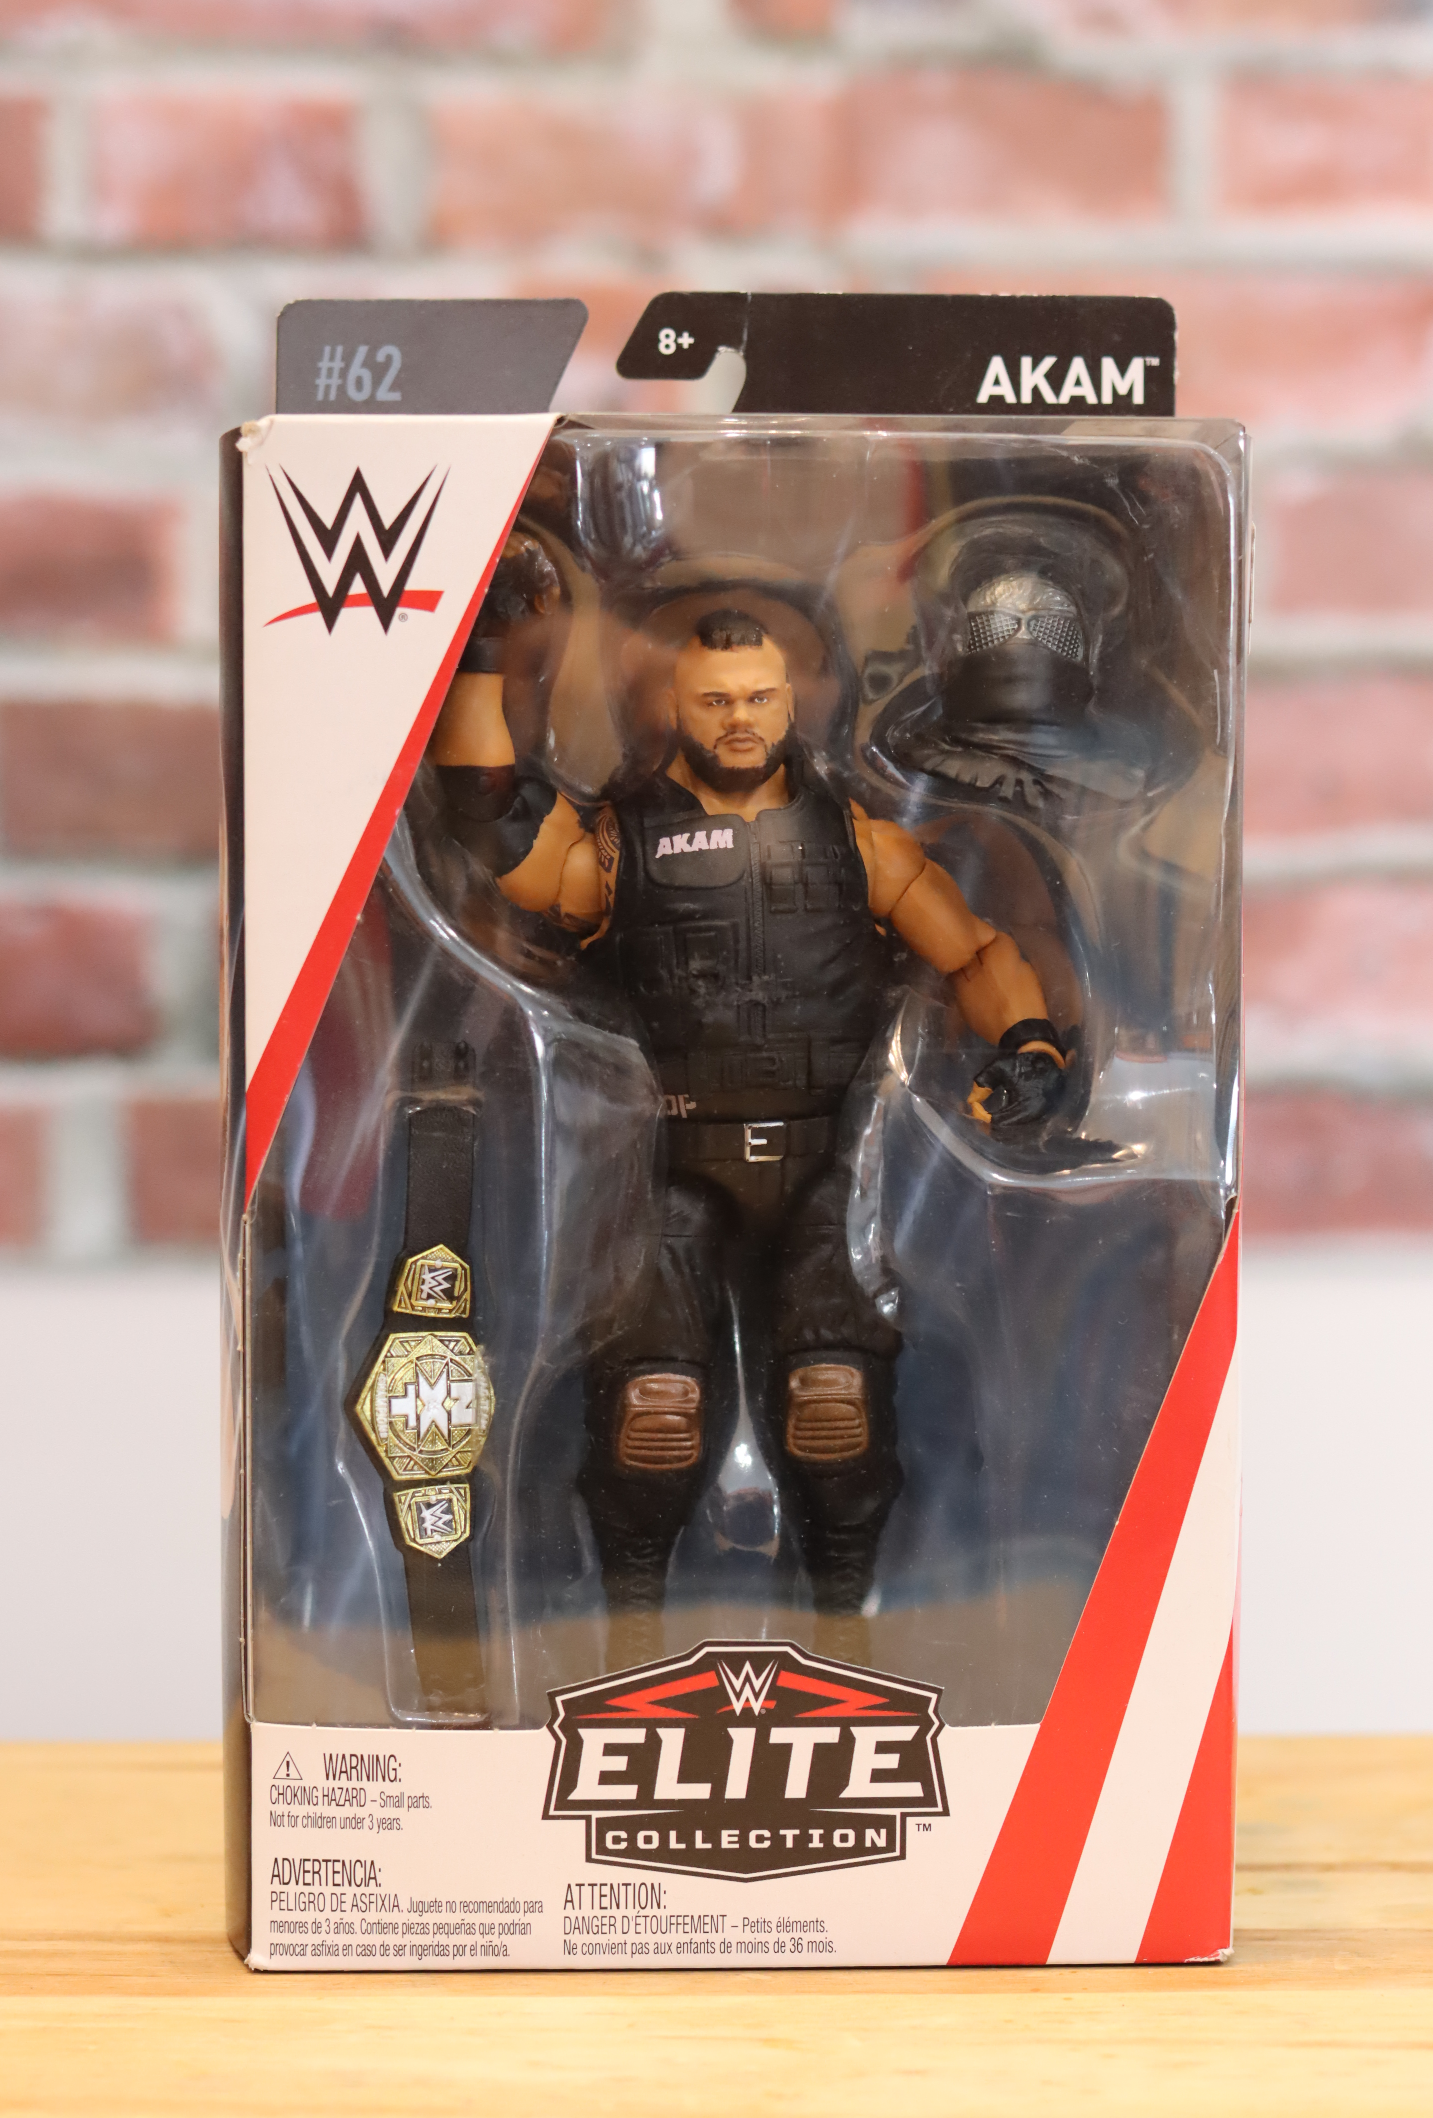 2018 Mattel Elite WWE Wrestling Figure Akam